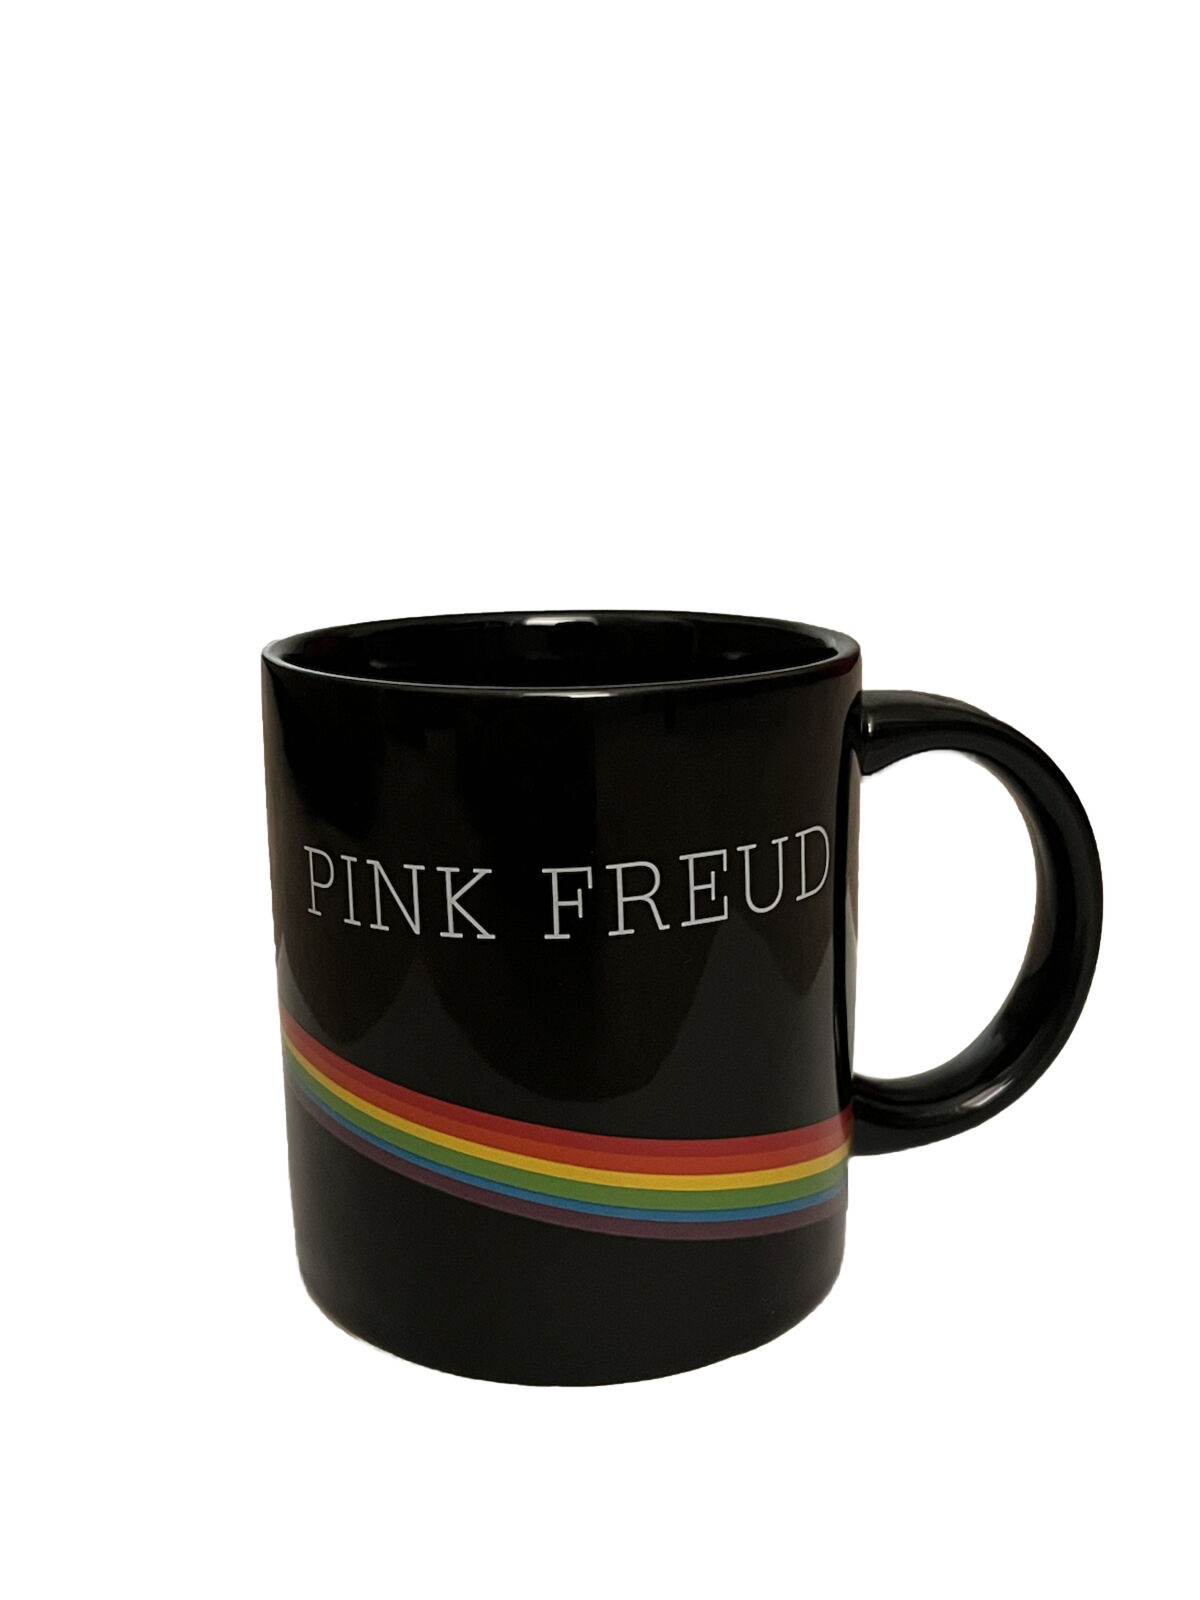 PINK FREUD - Coffee Mug w/ Pink Floyd Theme & Freud Pic 2015 - NEW